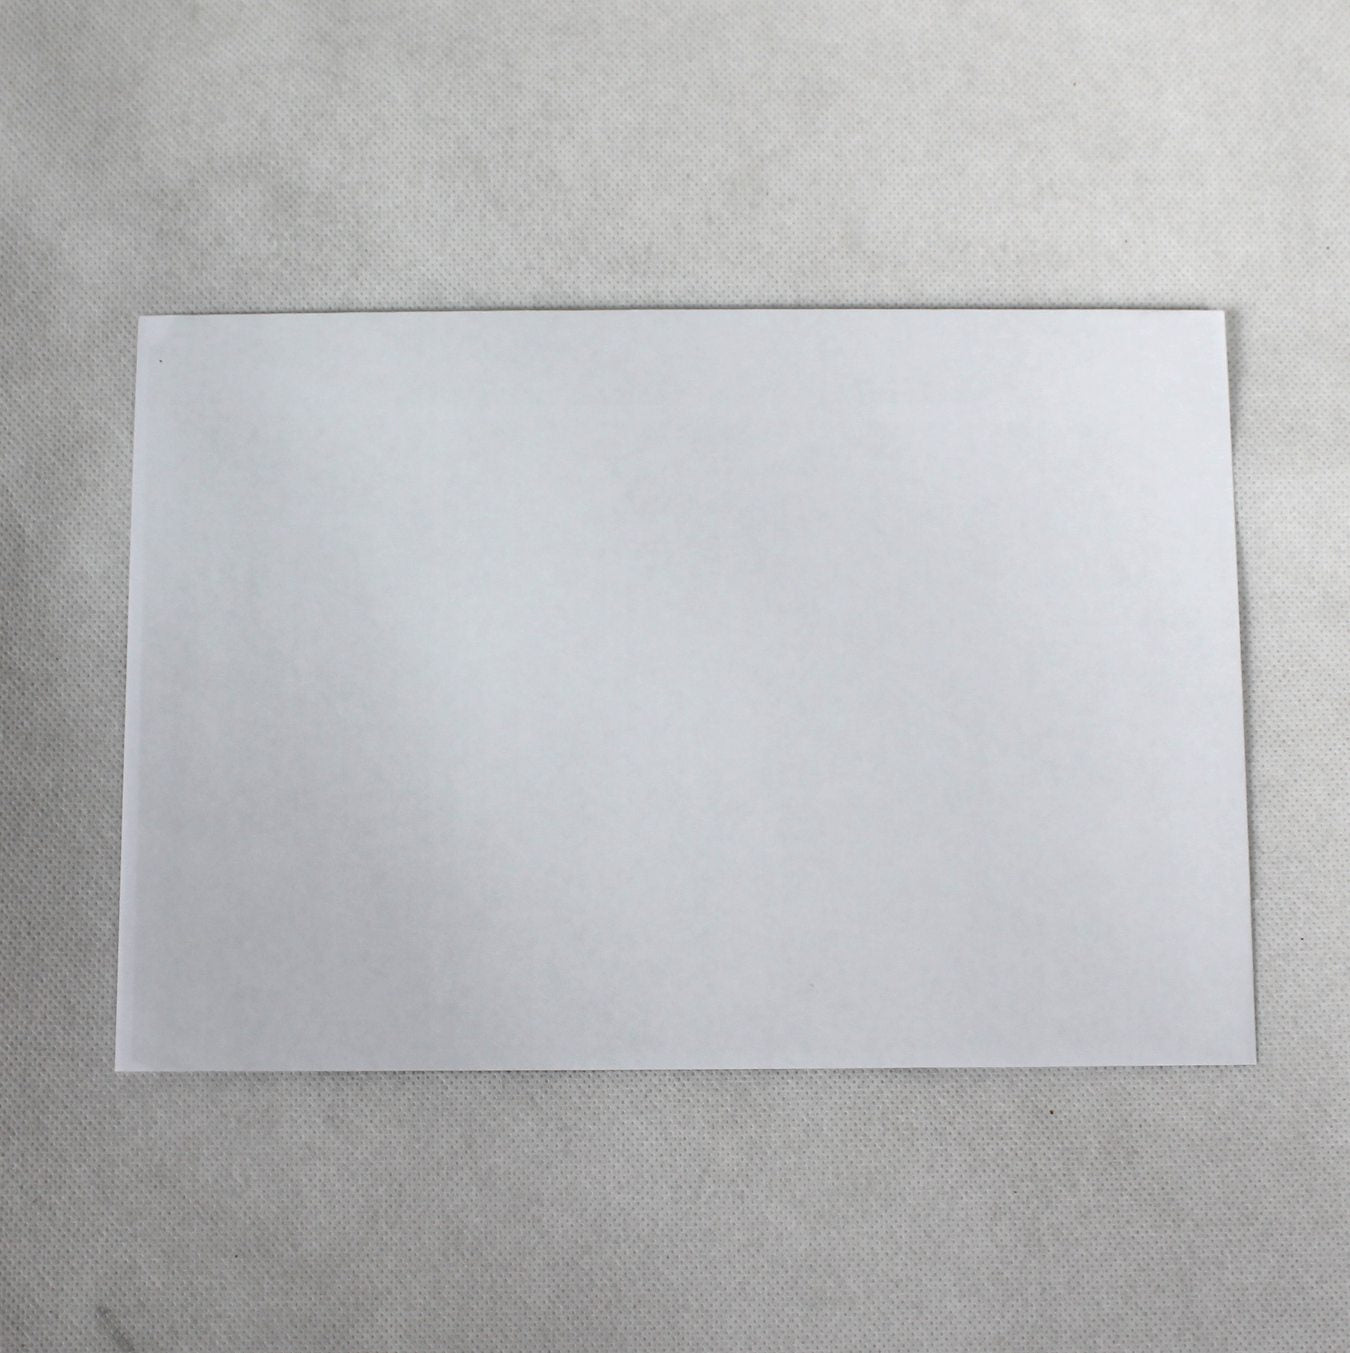 162x235mm C5+ White Gummed Envelopes (None Window)